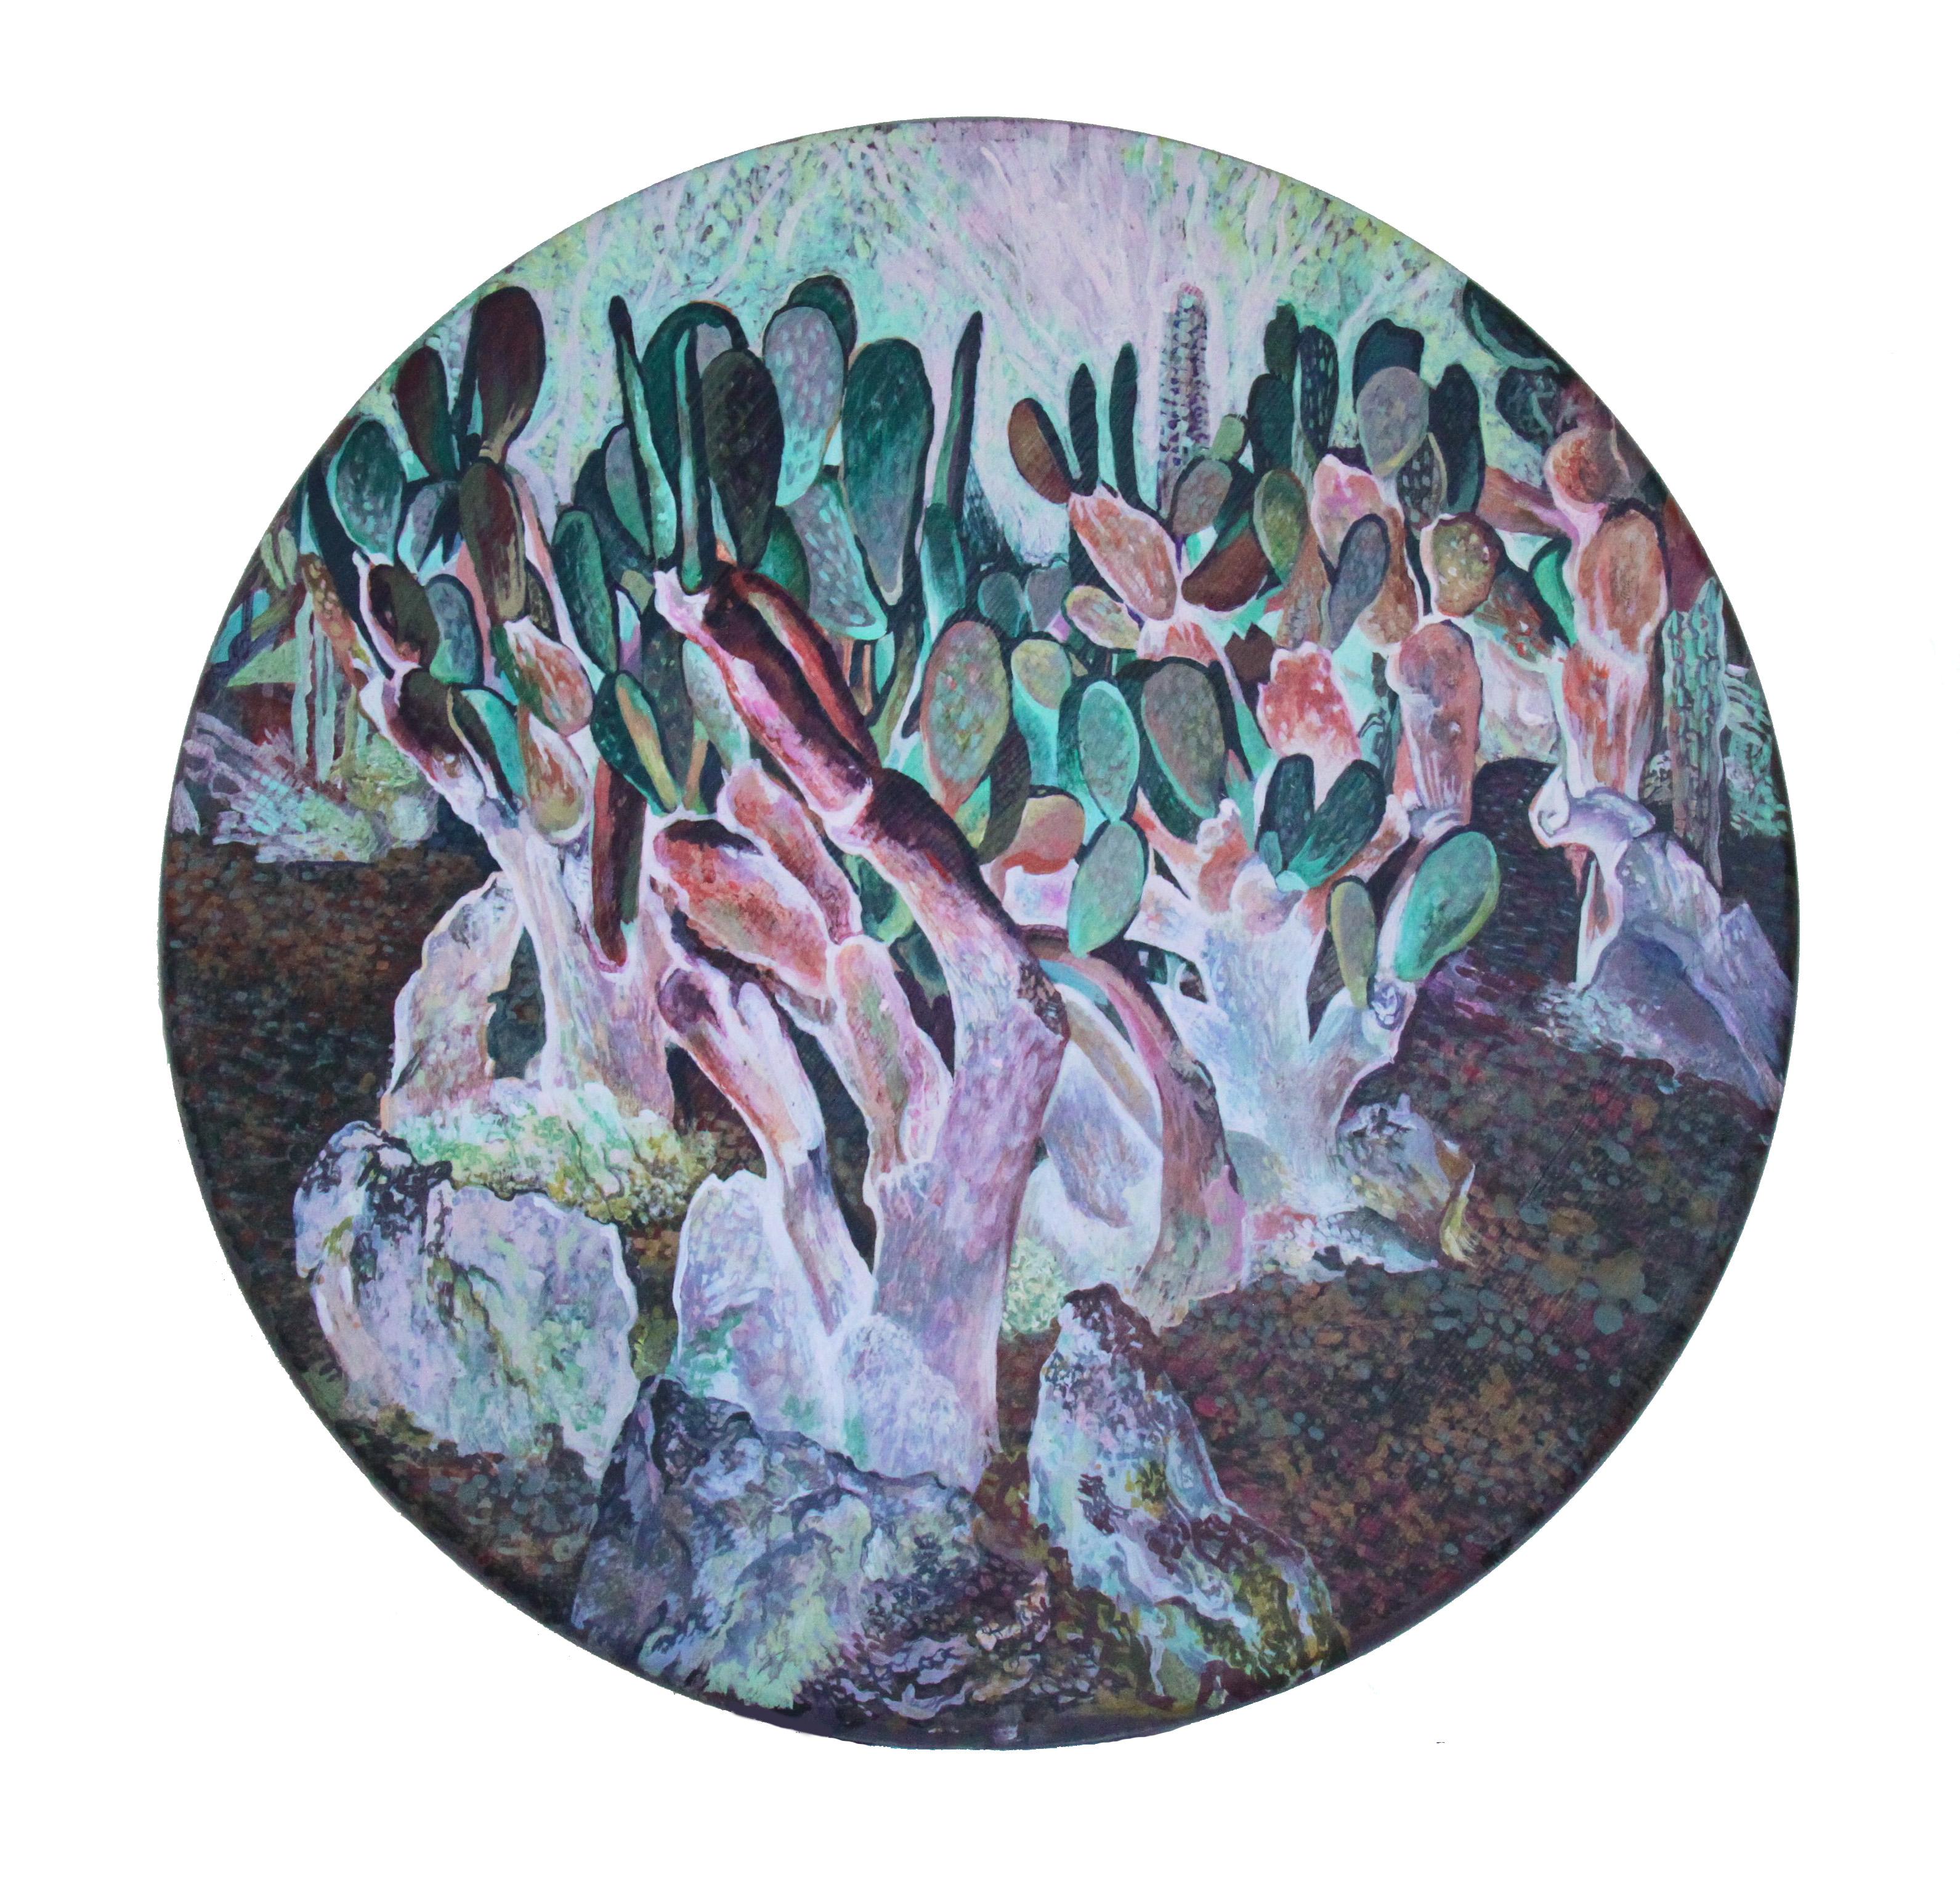 Noon (Kactus) – runde Holzplatte in Lavander-, Violett-, Grün- und Rosafarbe